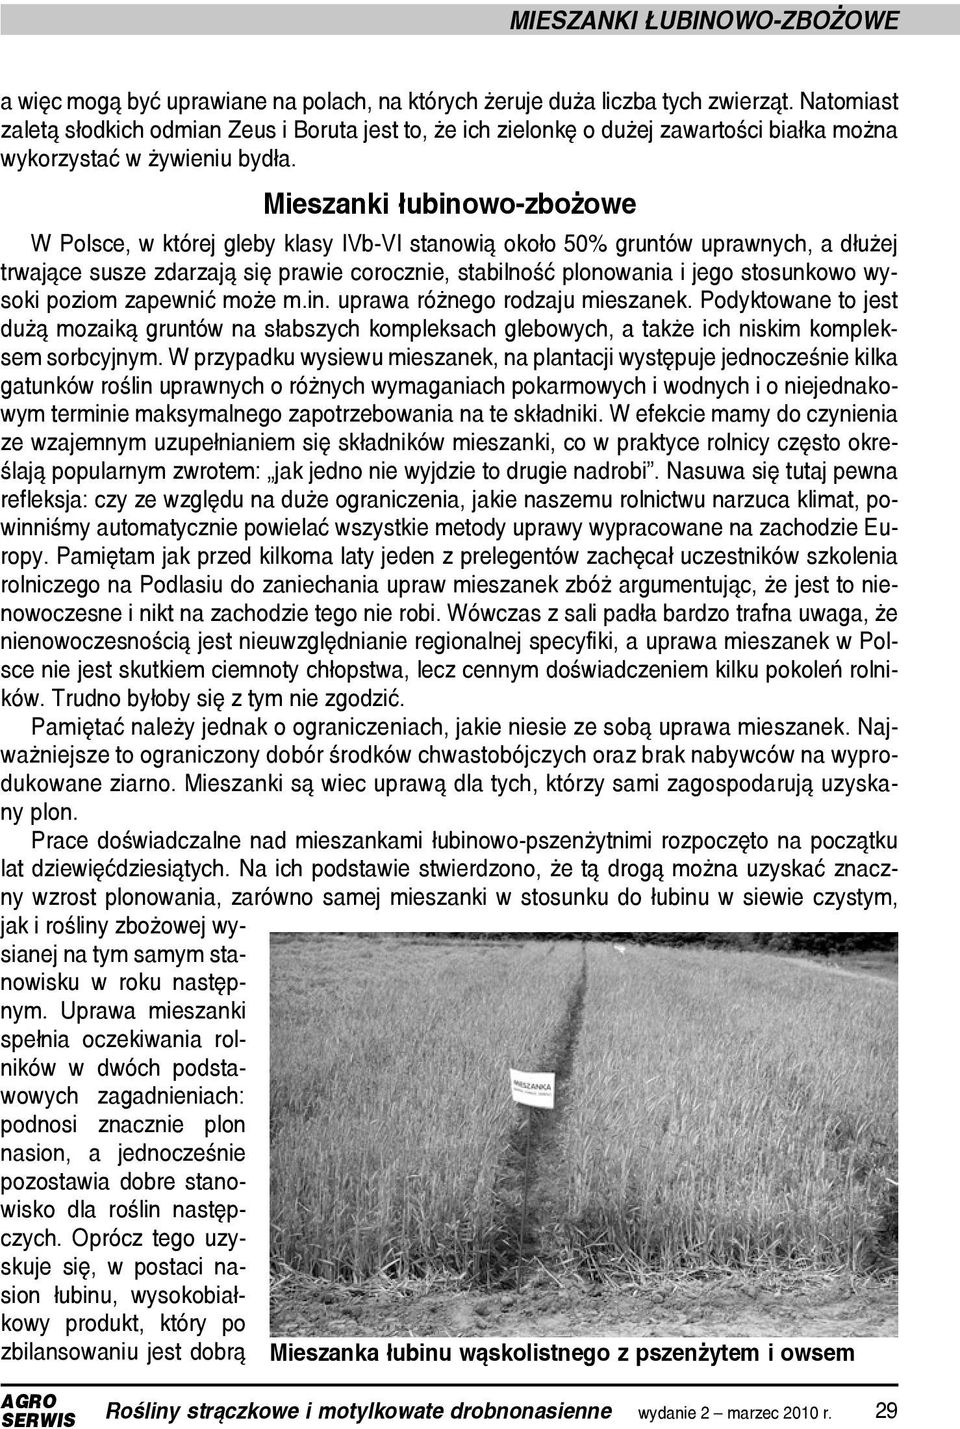 Mieszanki łubinowo-zbożowe W Polsce, w której gleby klasy IVb-VI stanowią około 50% gruntów uprawnych, a dłużej trwające susze zdarzają się prawie corocznie, stabilność plonowania i jego stosunkowo